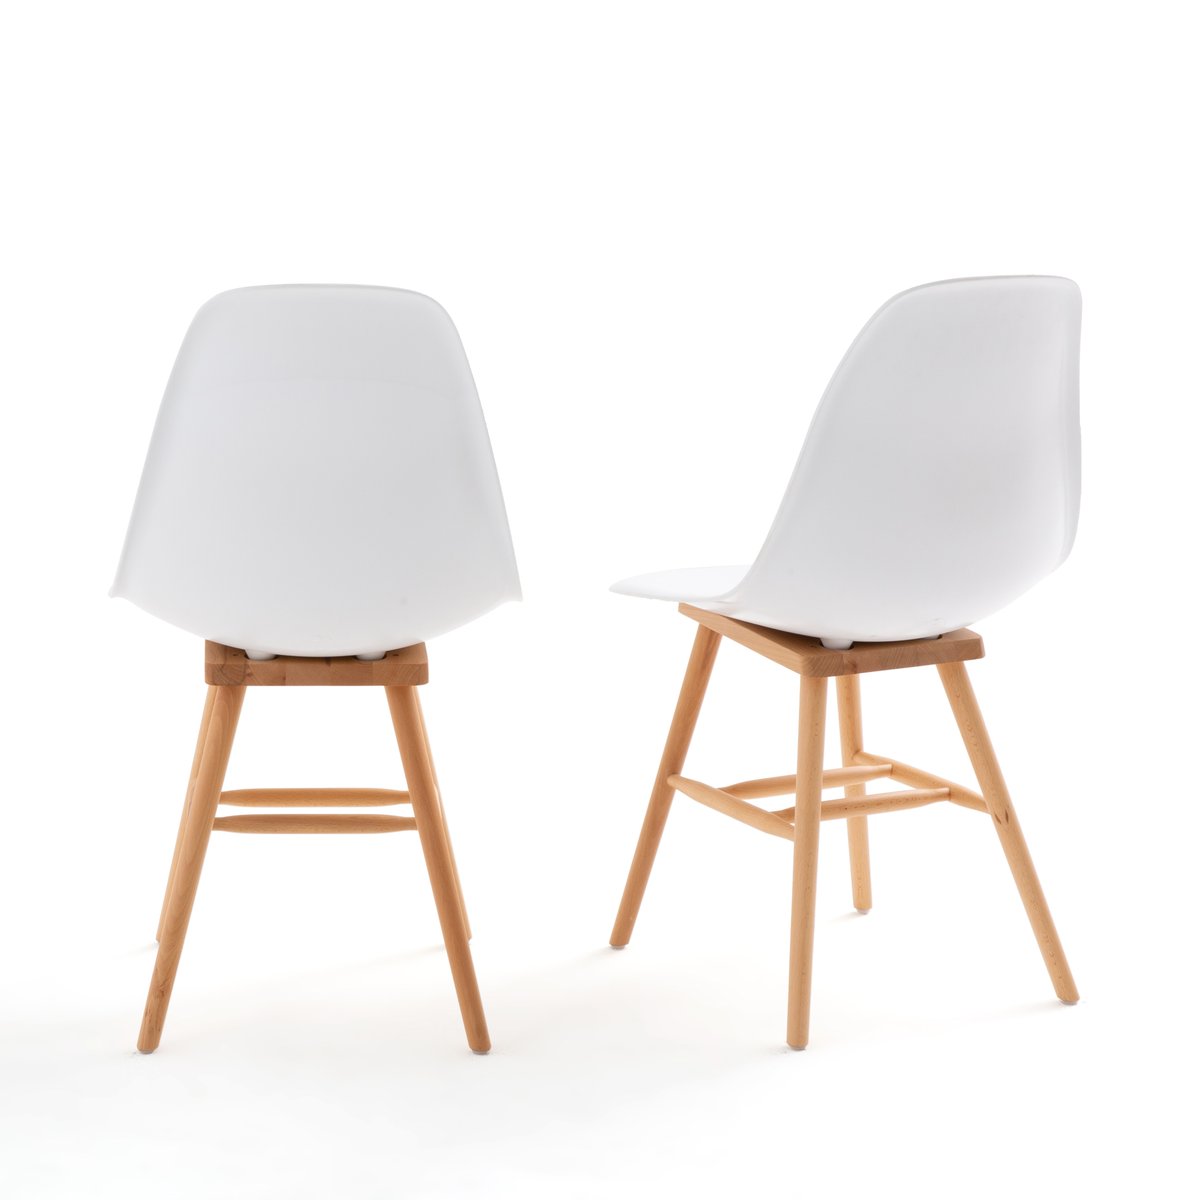 Комплект из  пластиковых стульев La Redoute Jimi единый размер белый - фото 2